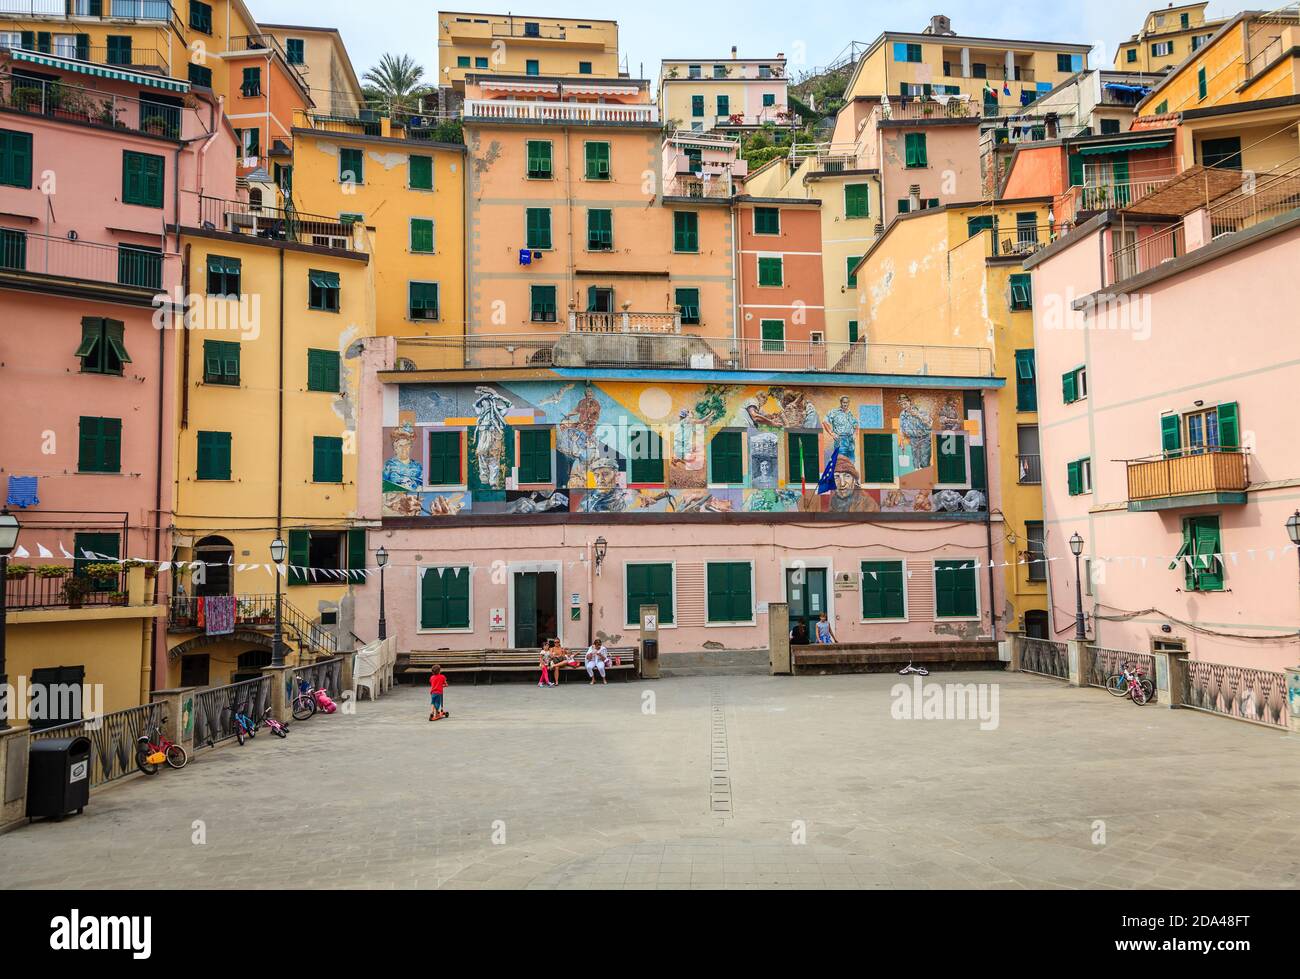 Riomaggiore, Italien, 22. September 2015: Traditionelle Häuser im Dorf Riomaggiore in Italien Stockfoto